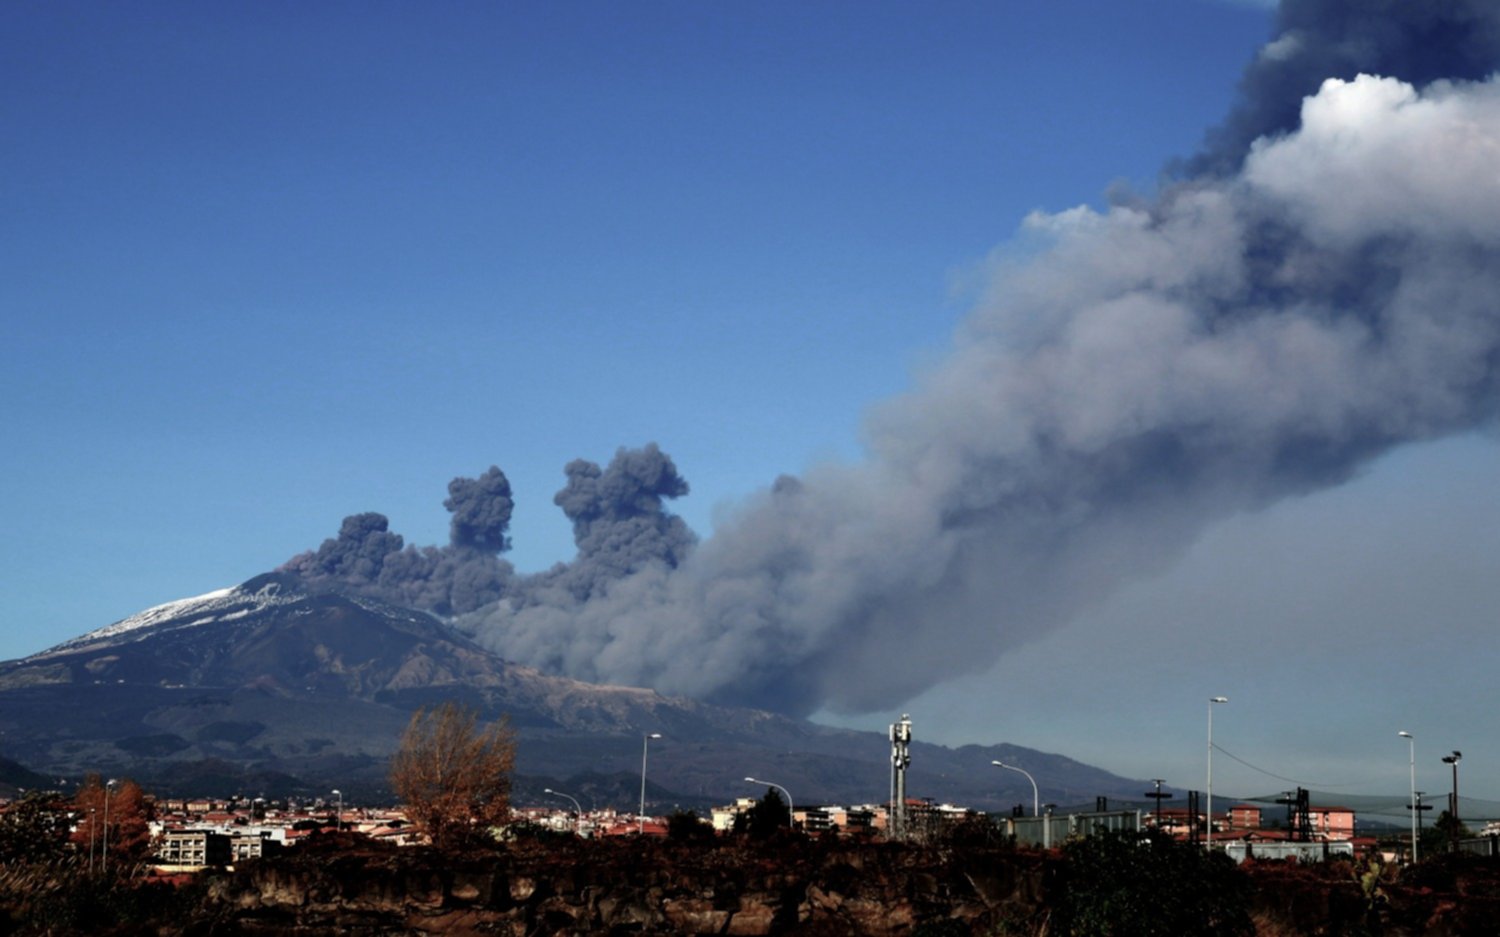  El volcán Etna continúa en erupción con emisión de gases y temblores